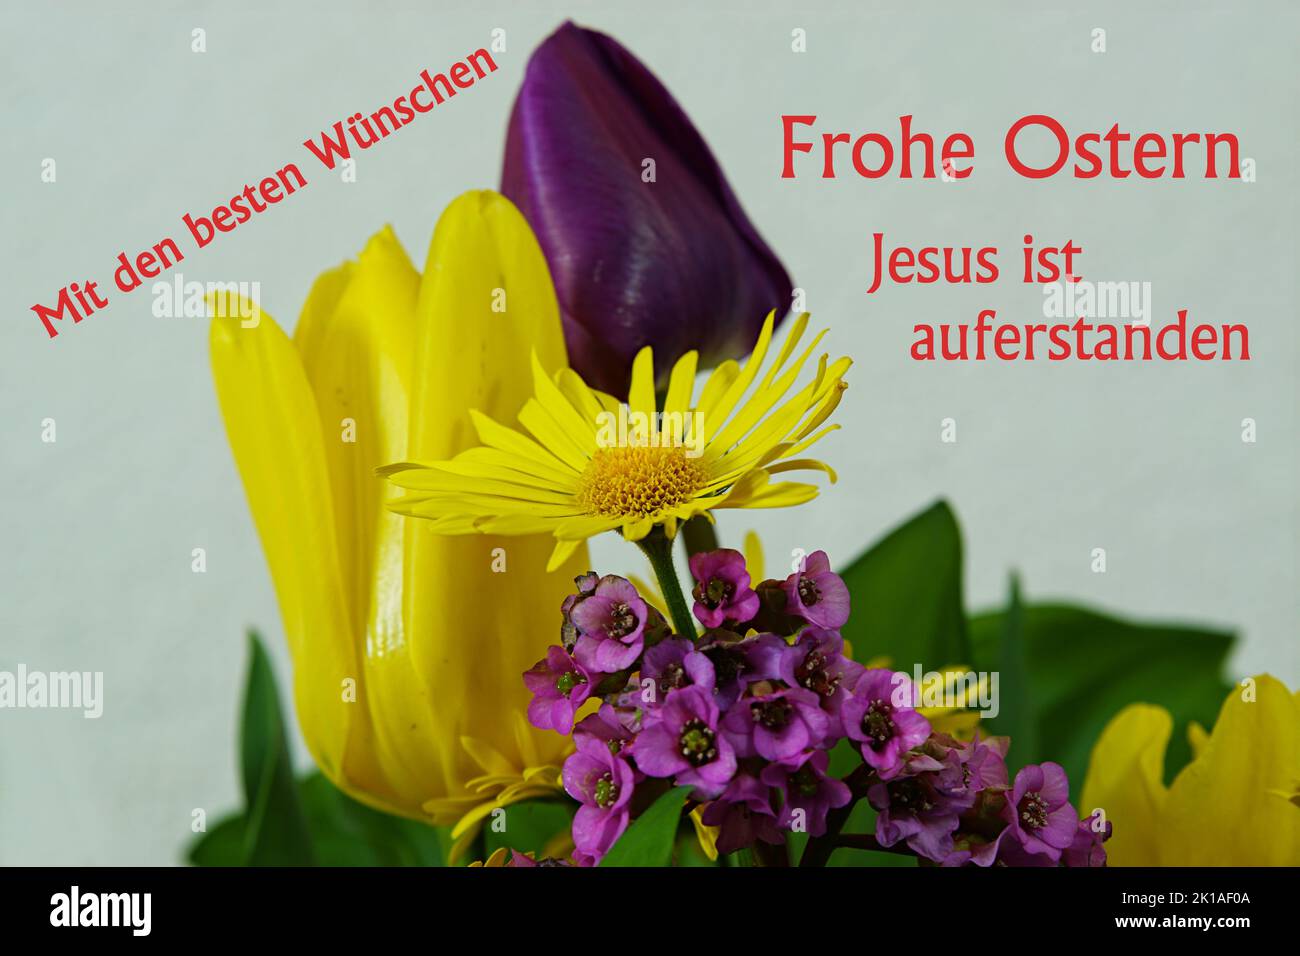 MIT den besten Wünschen - Frühlingsblüten - Frohe Ostern - Jesus ist auferstanden Foto de stock